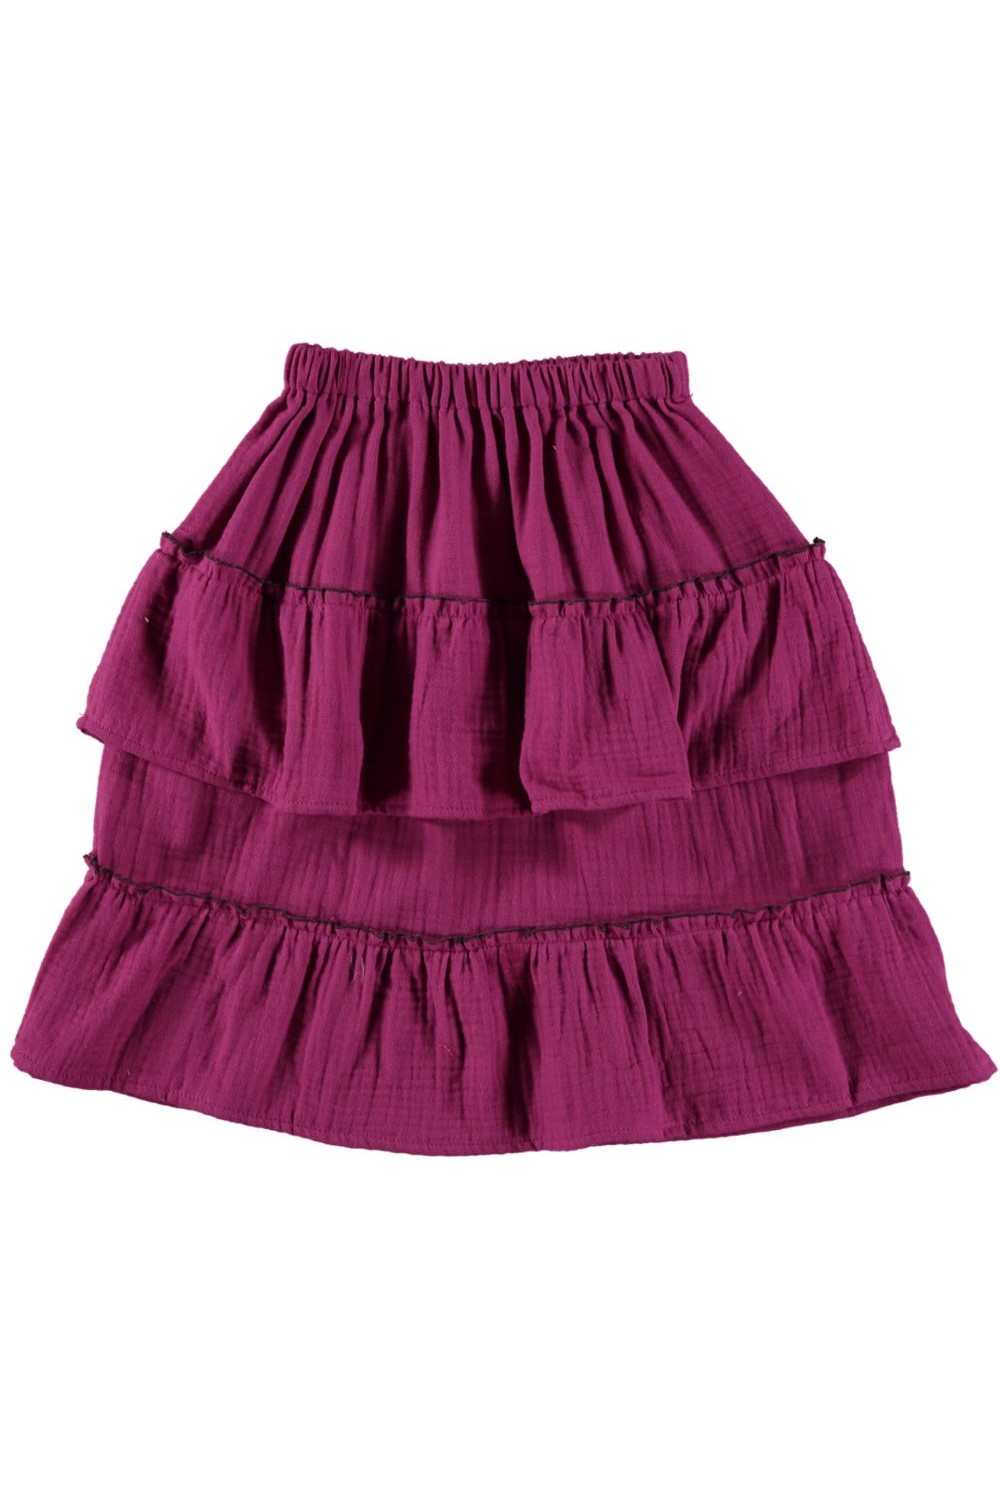 Nomade pink girl's skirt